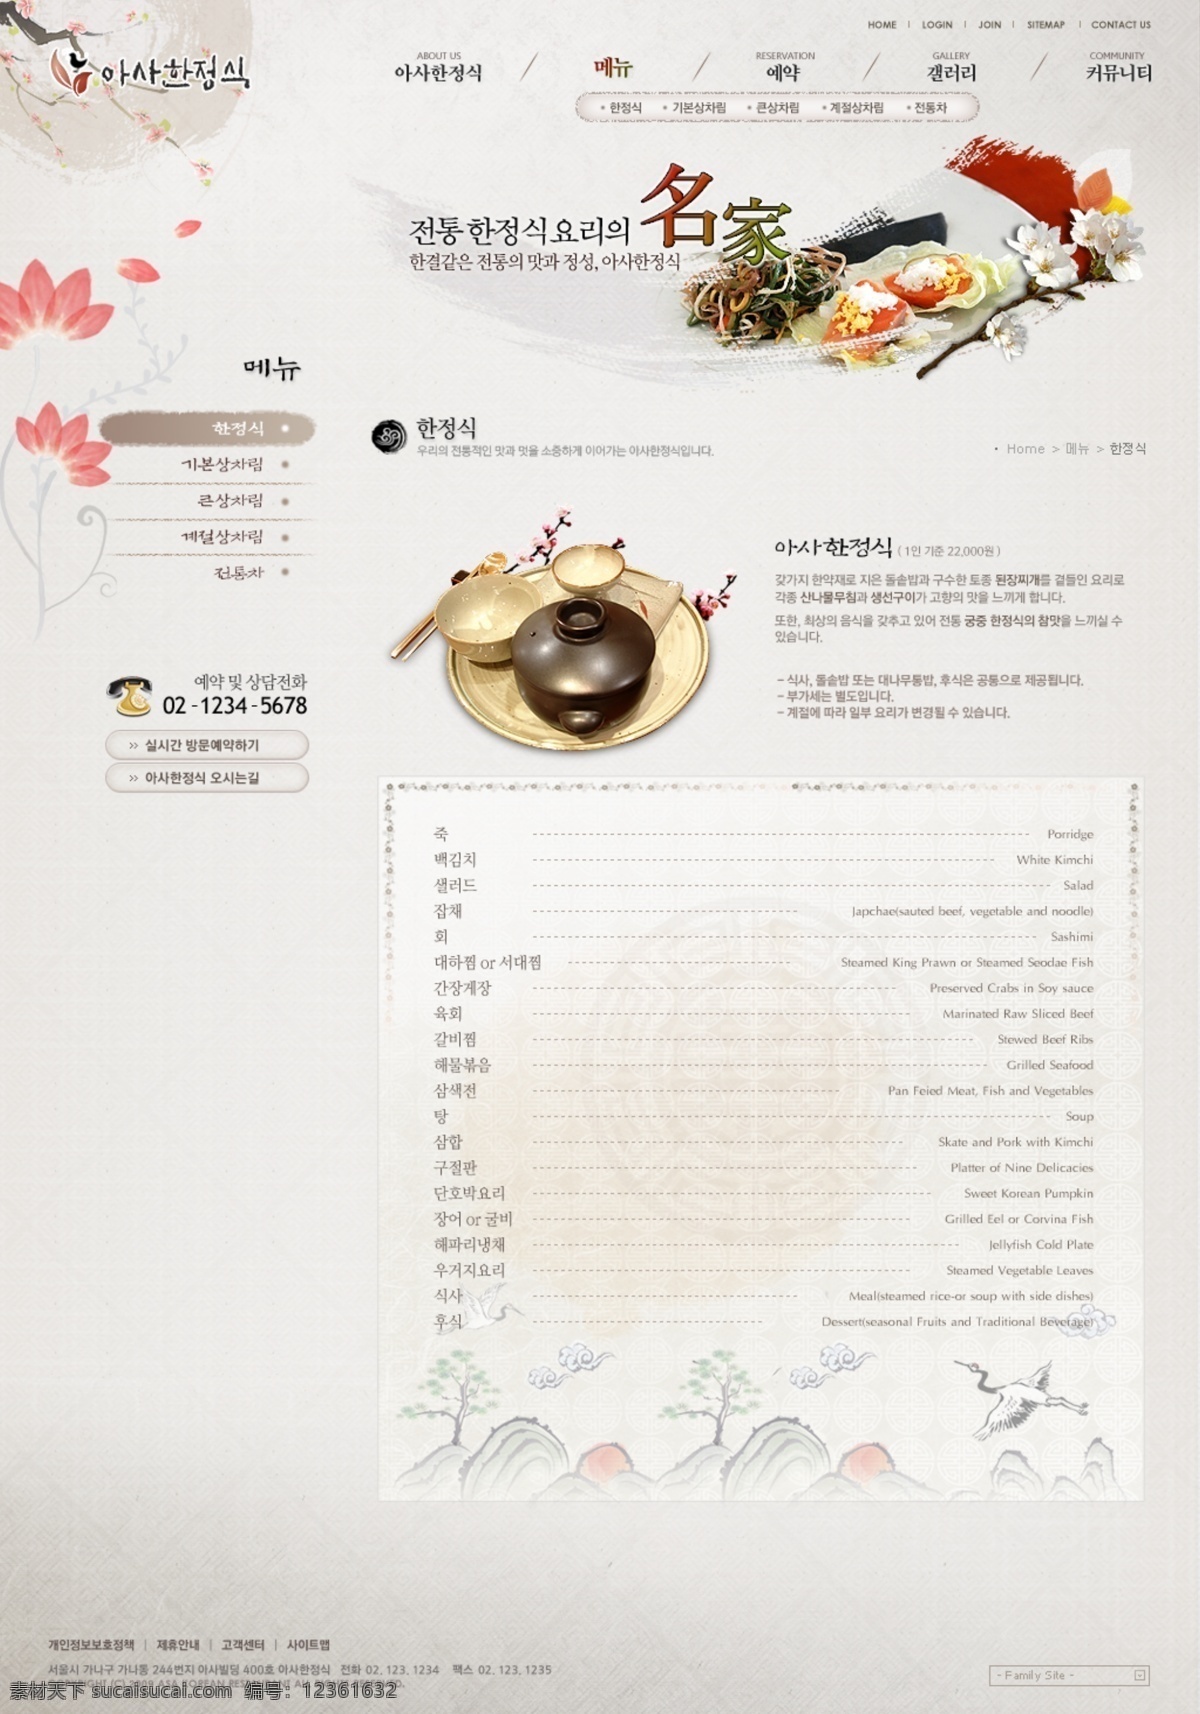 韩国 餐饮 首页 psd模版 茶壶 韩式 花瓣 网站 饮食文化 网页素材 网页模板